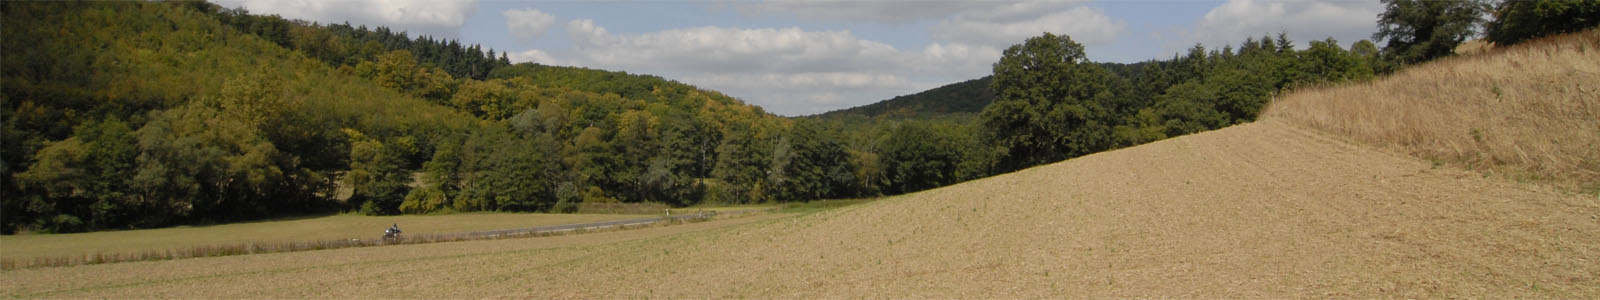 Getreidefeld mit Wald im Hintergrund ©DLR